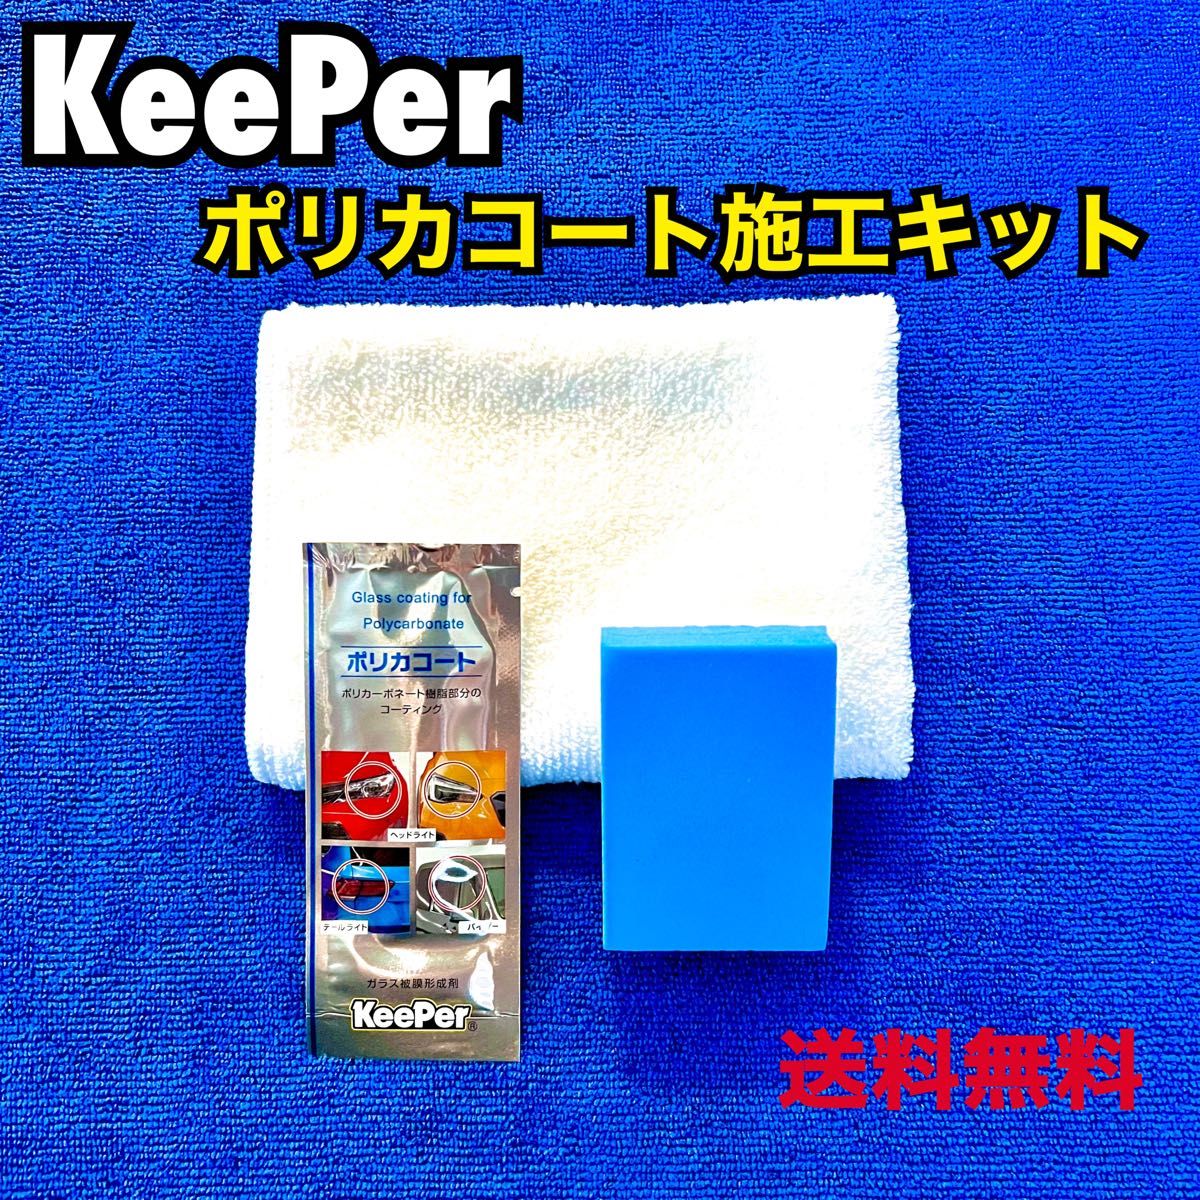 営業 KeePer キーパー技研 ポリカコート ヘッドライト 施工キット 正規品